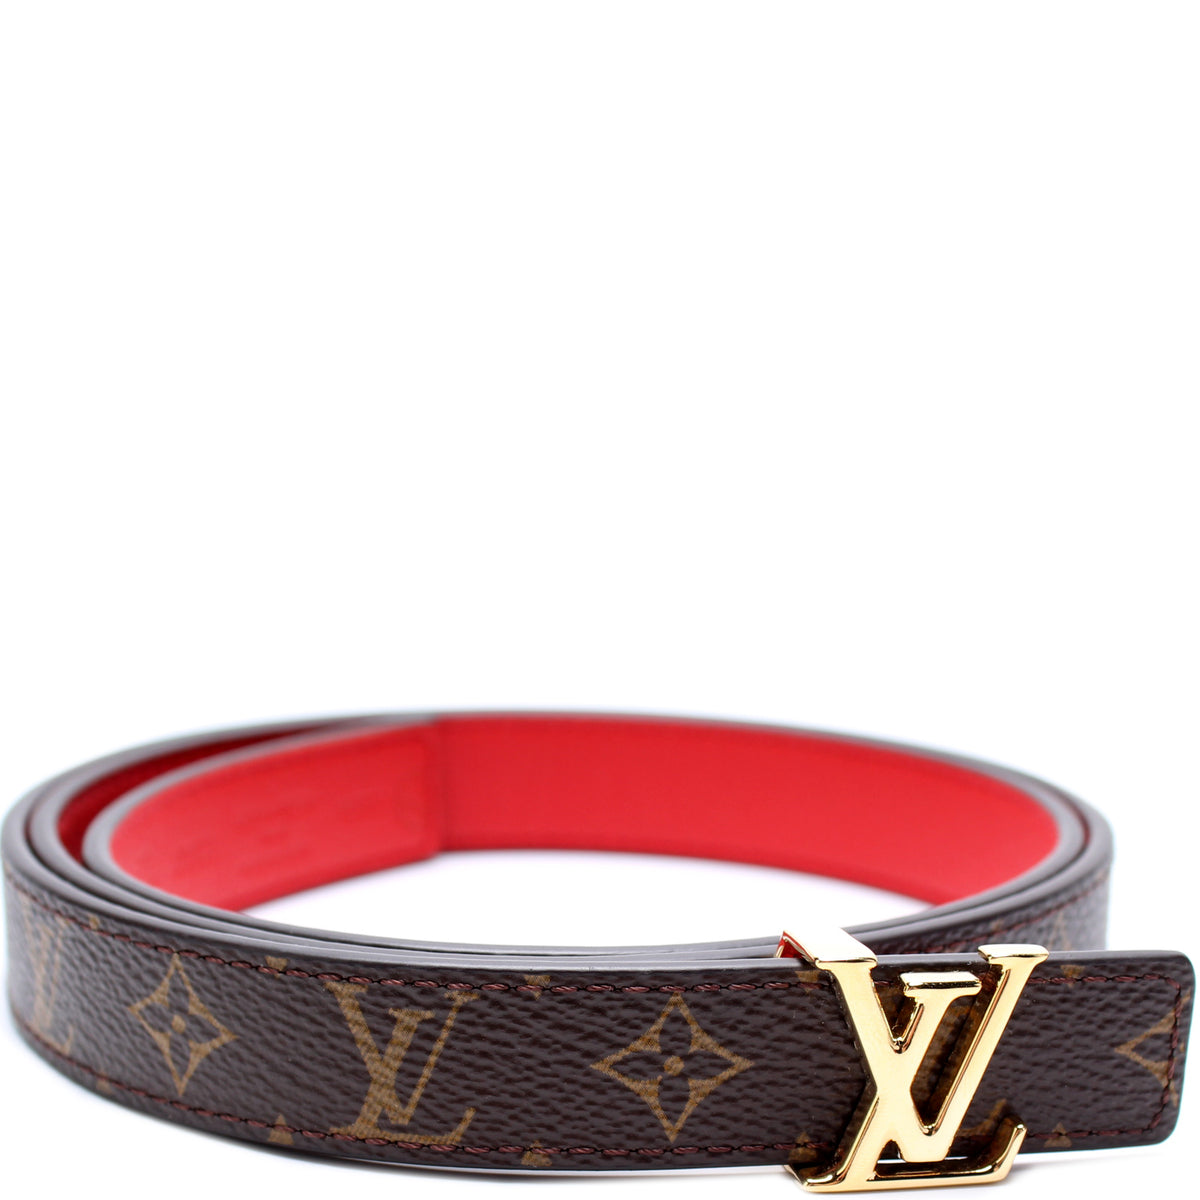 Louis Vuitton - Pretty LV 20mm Reversible Belt - Monogram Canvas & Leather - Cream - Size: 85 cm - Luxury